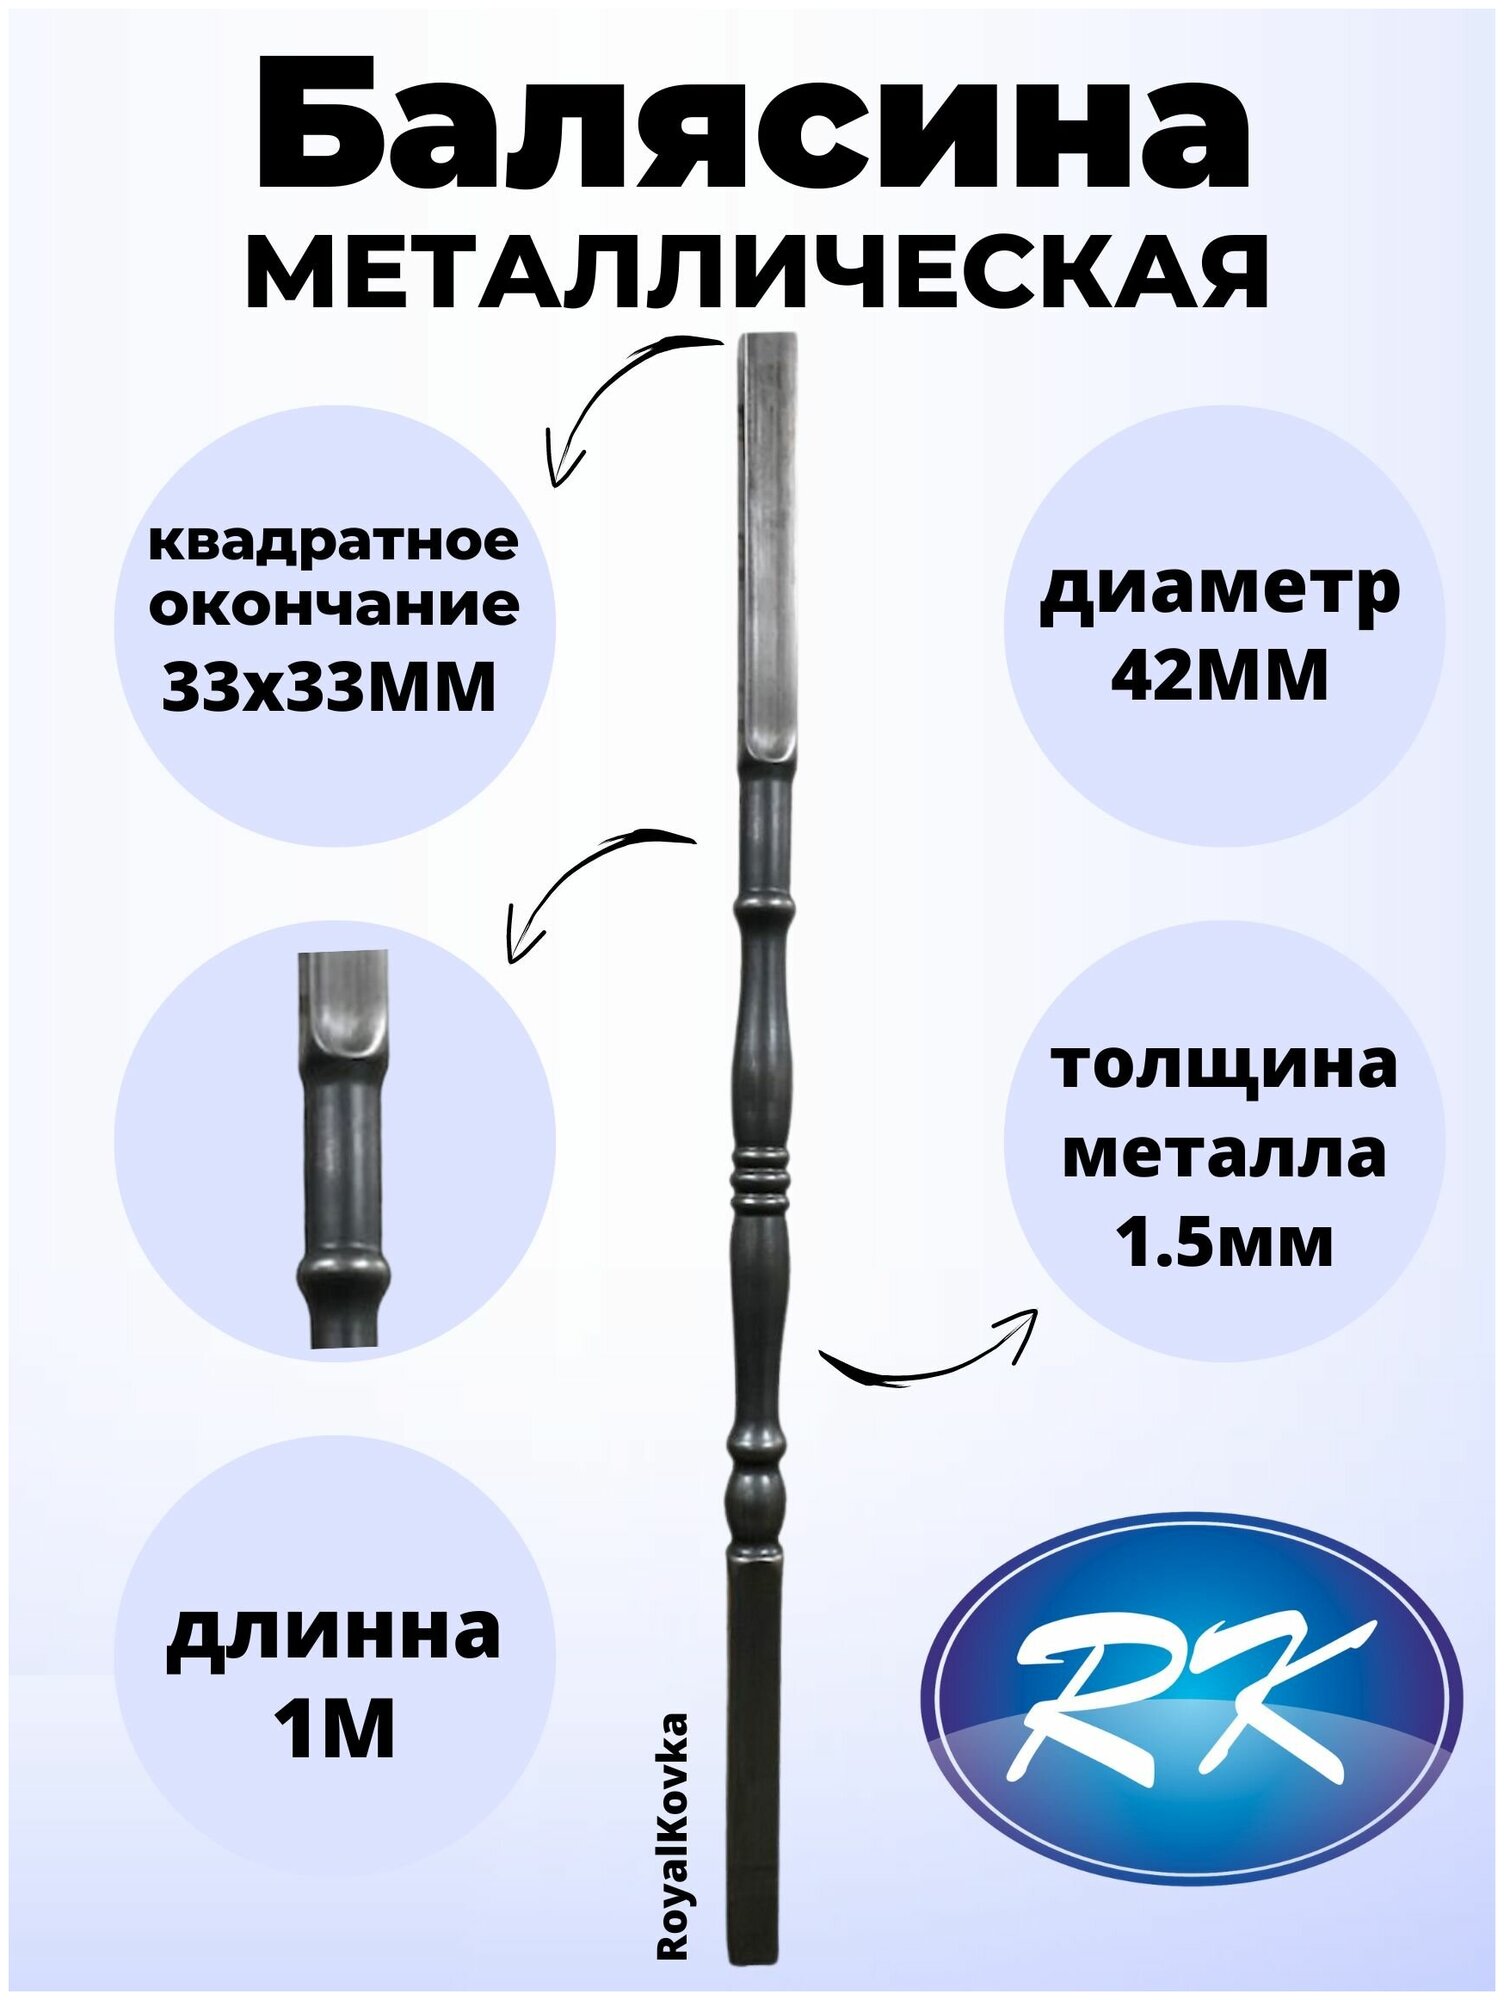 Балясина кованая металлическая Royal Kovka, диаметр 42 мм, квадратные окончания 33х33 мм, арт. 33*33.4 КВ